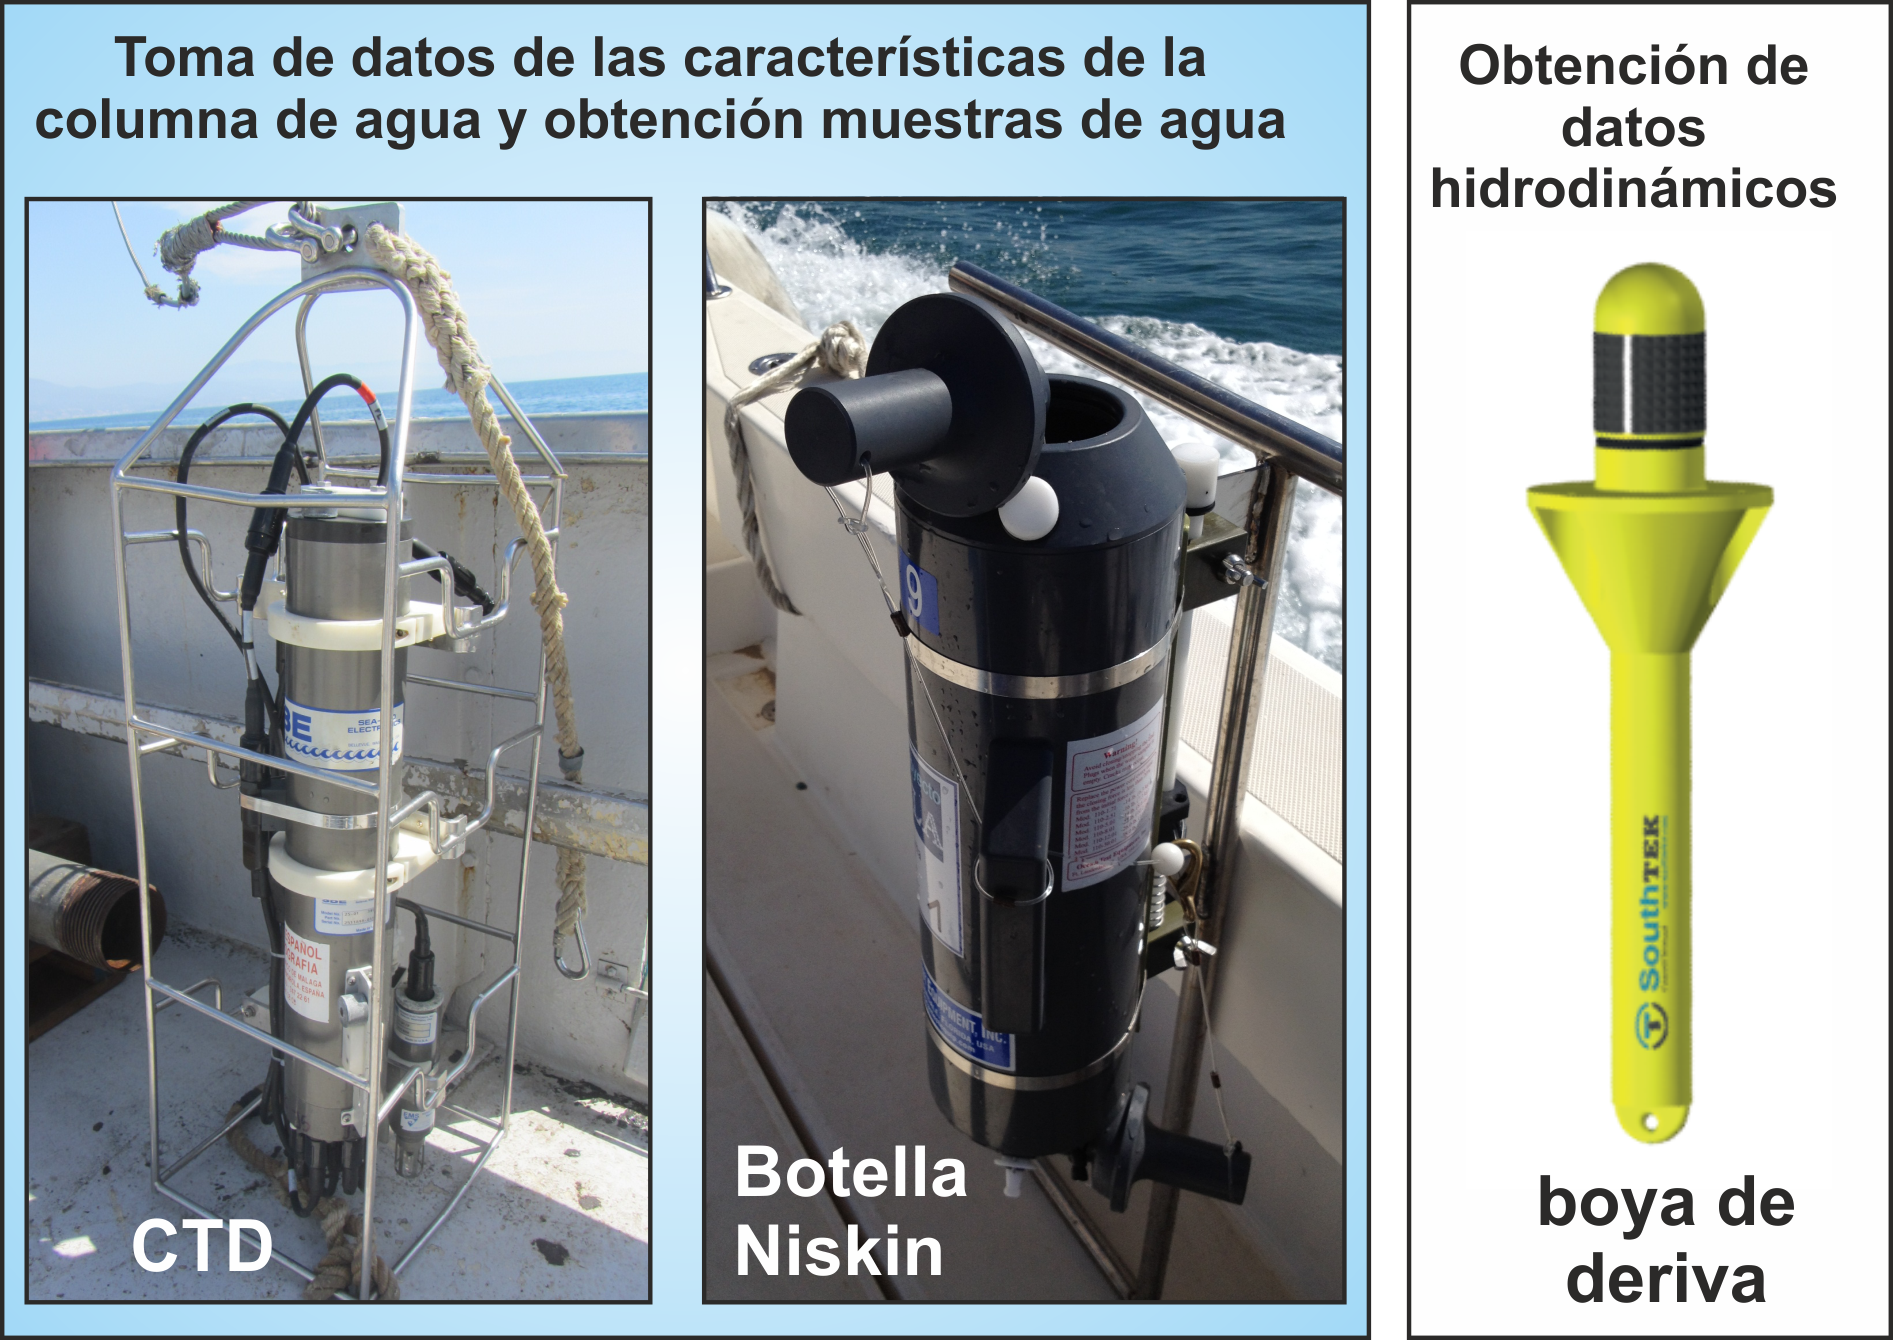 Sistemas de muestreo y adquisición de datos de las caractrísticas físicas de la columna de agua, así como de las características de las corrientes.